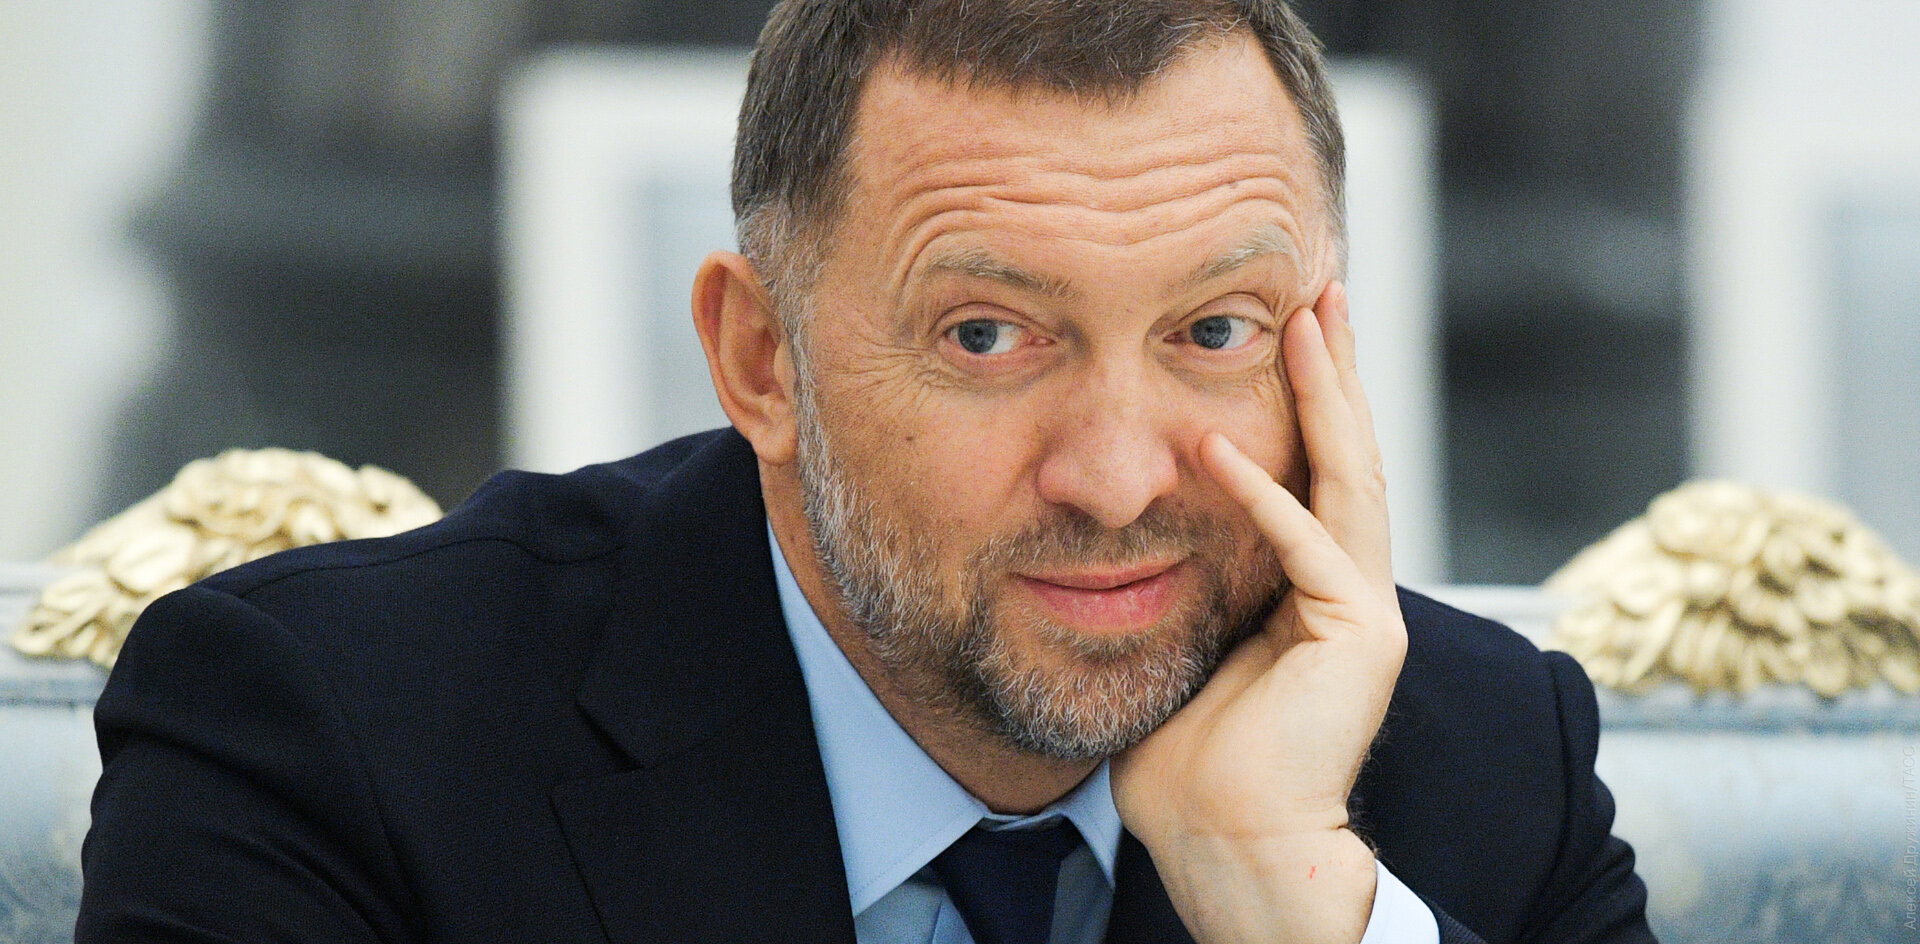 Адвокат Навального требует 24 бесплатных опровержения в «Коммерсанте»